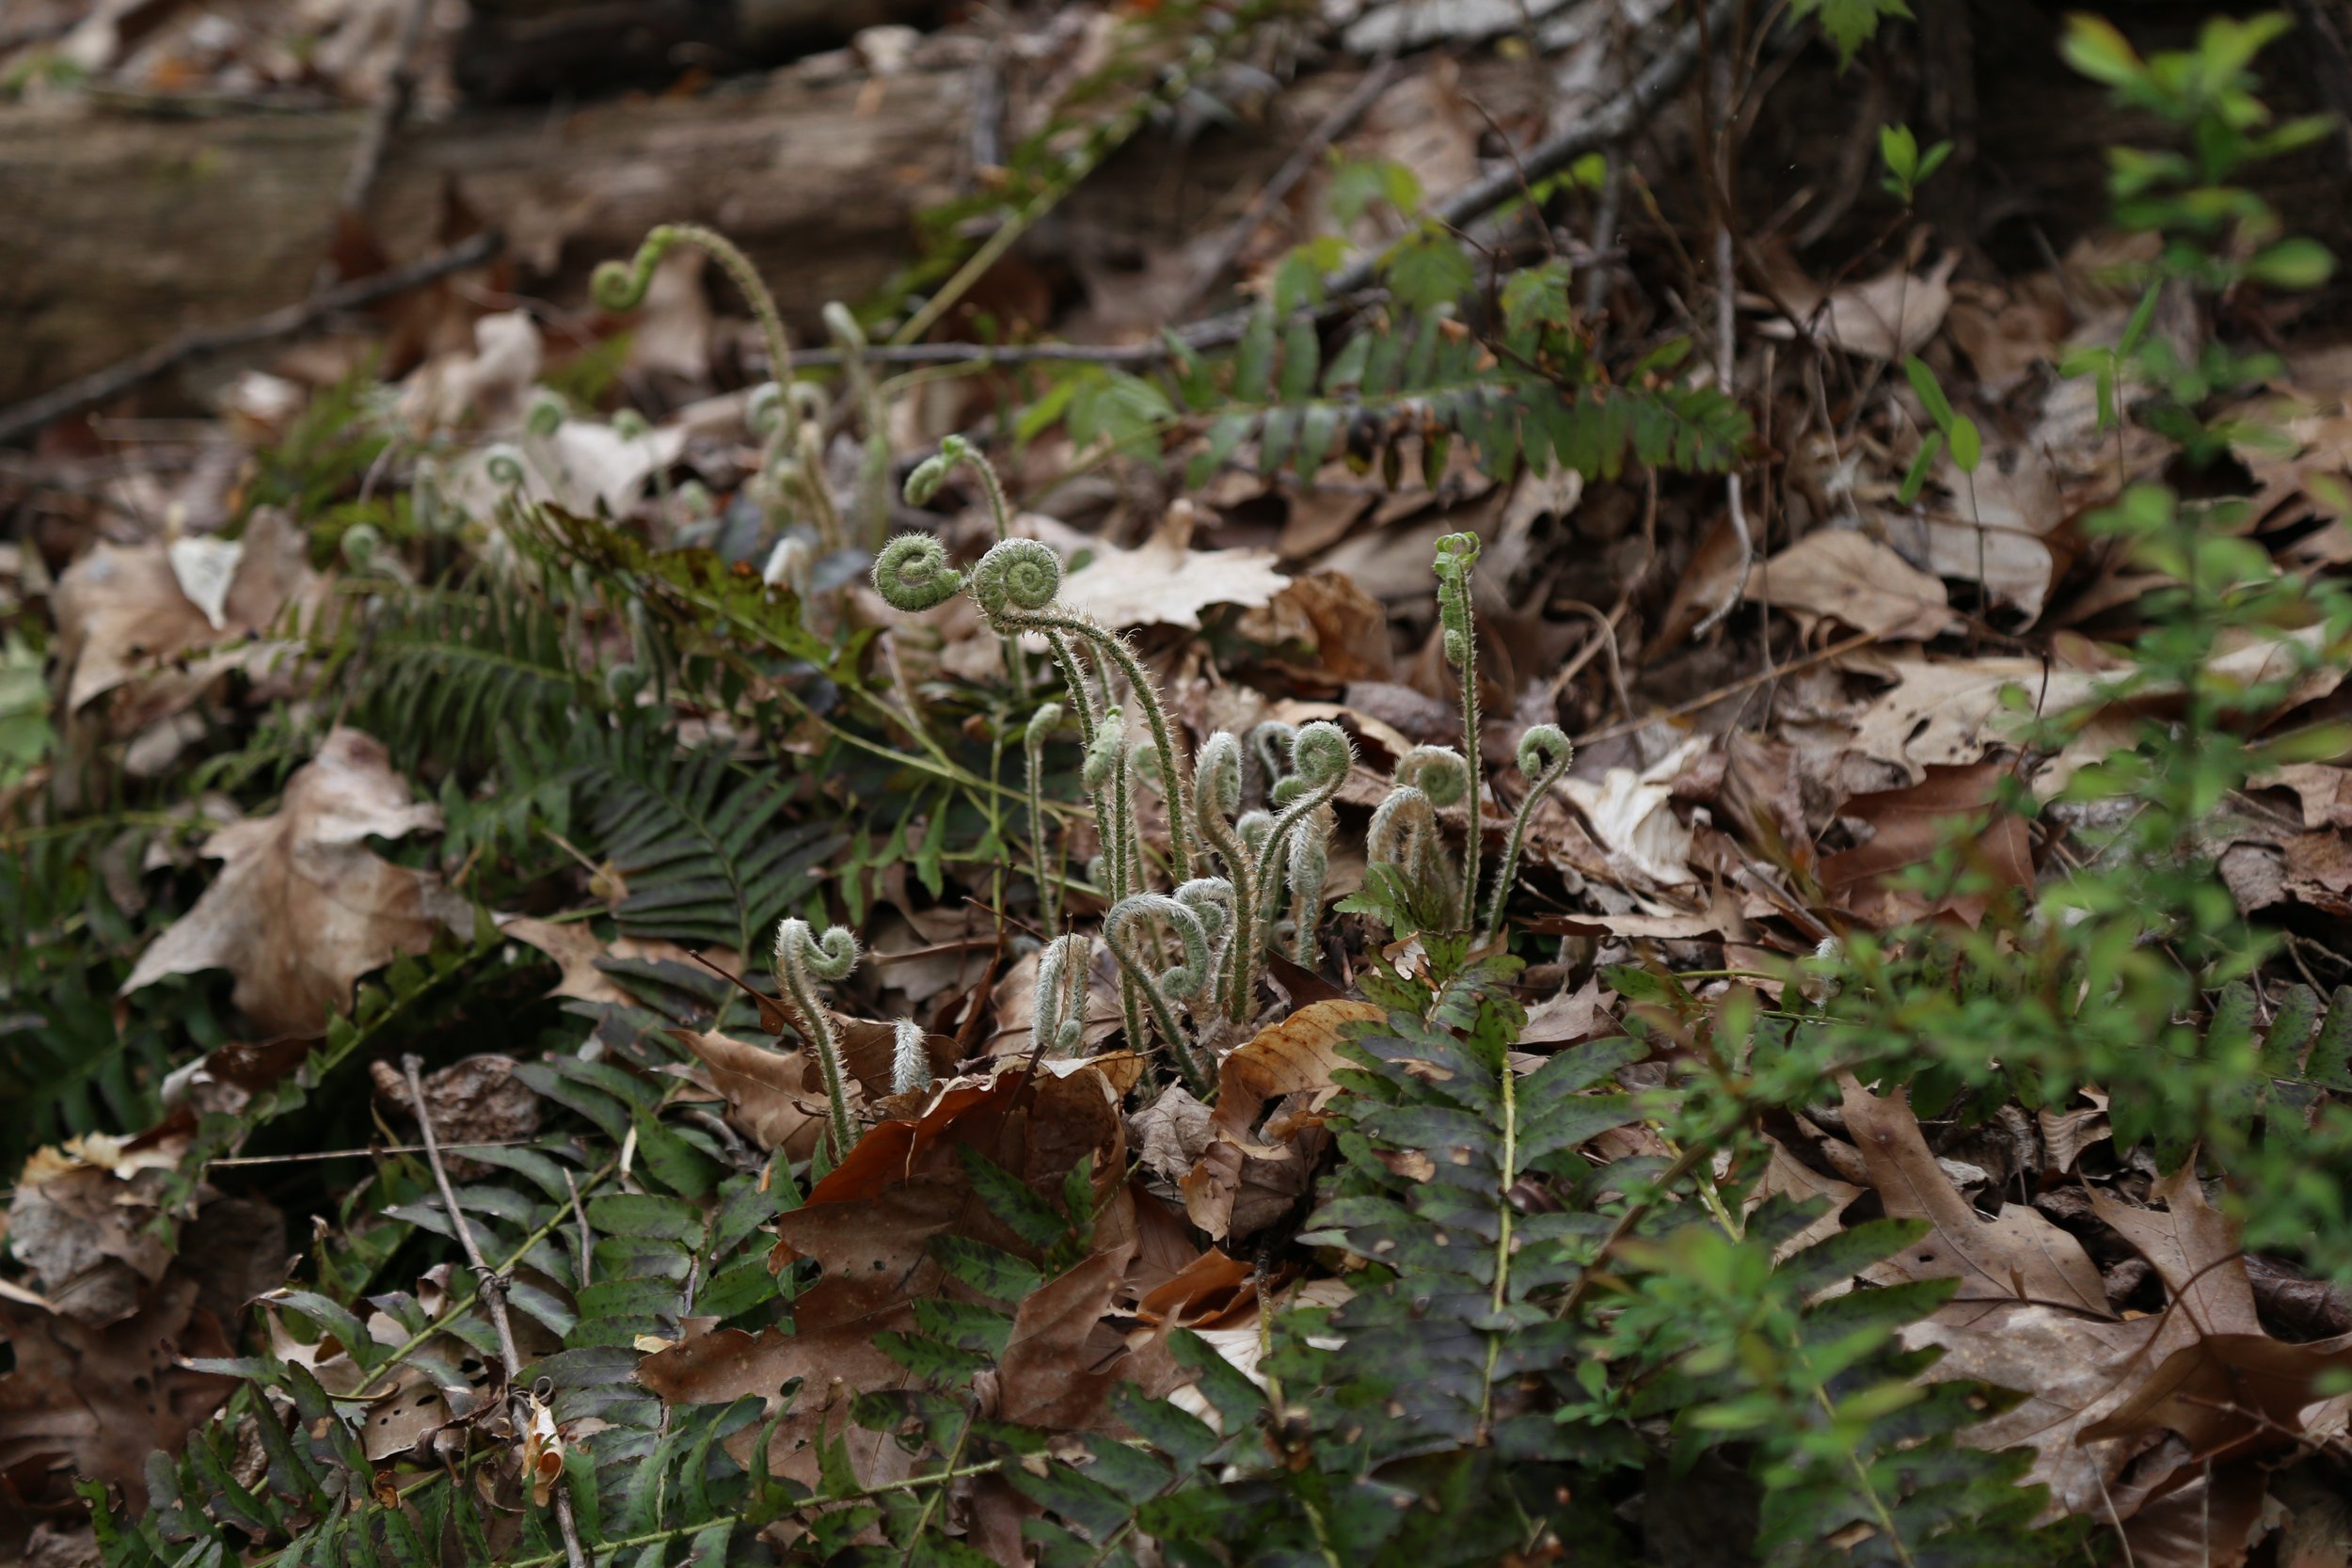  Polystichum acrostichoides (Christmas fern) 